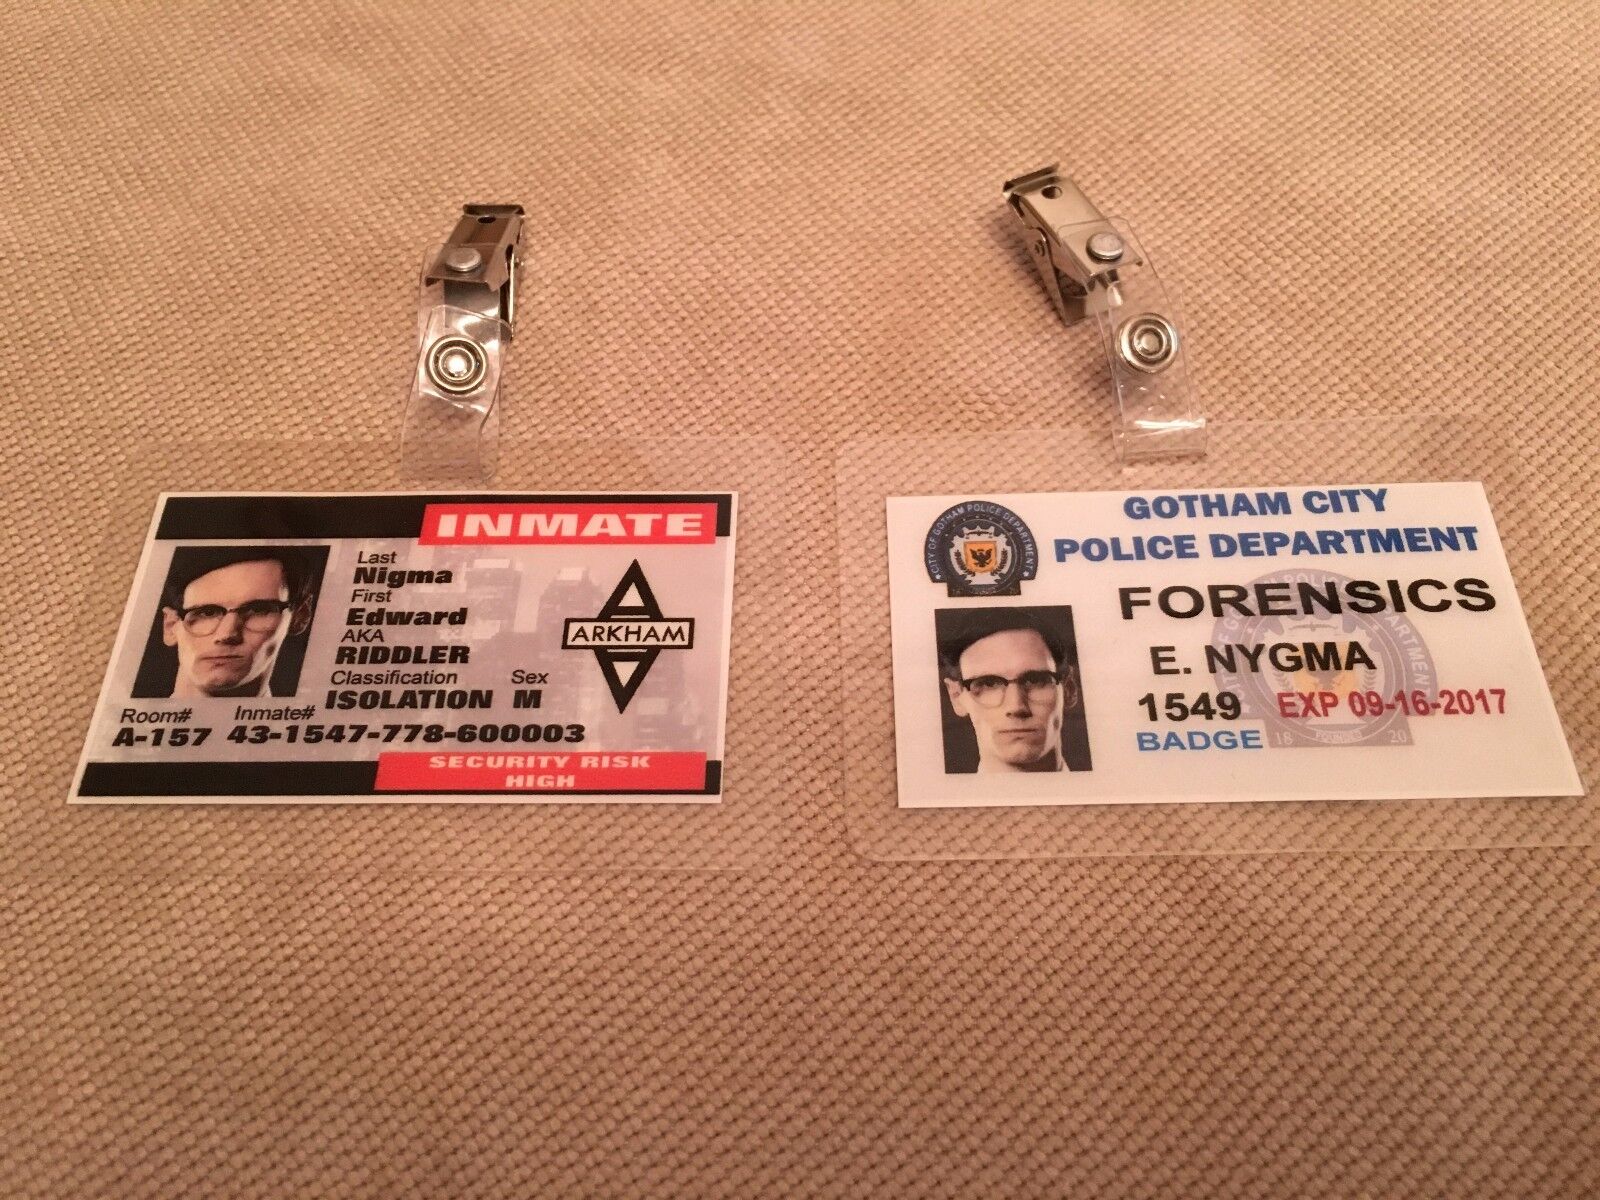 Gotham  ID Badge - ForensicS Edward Nygma ARKHAM cosplay prop costume 2 BADGES